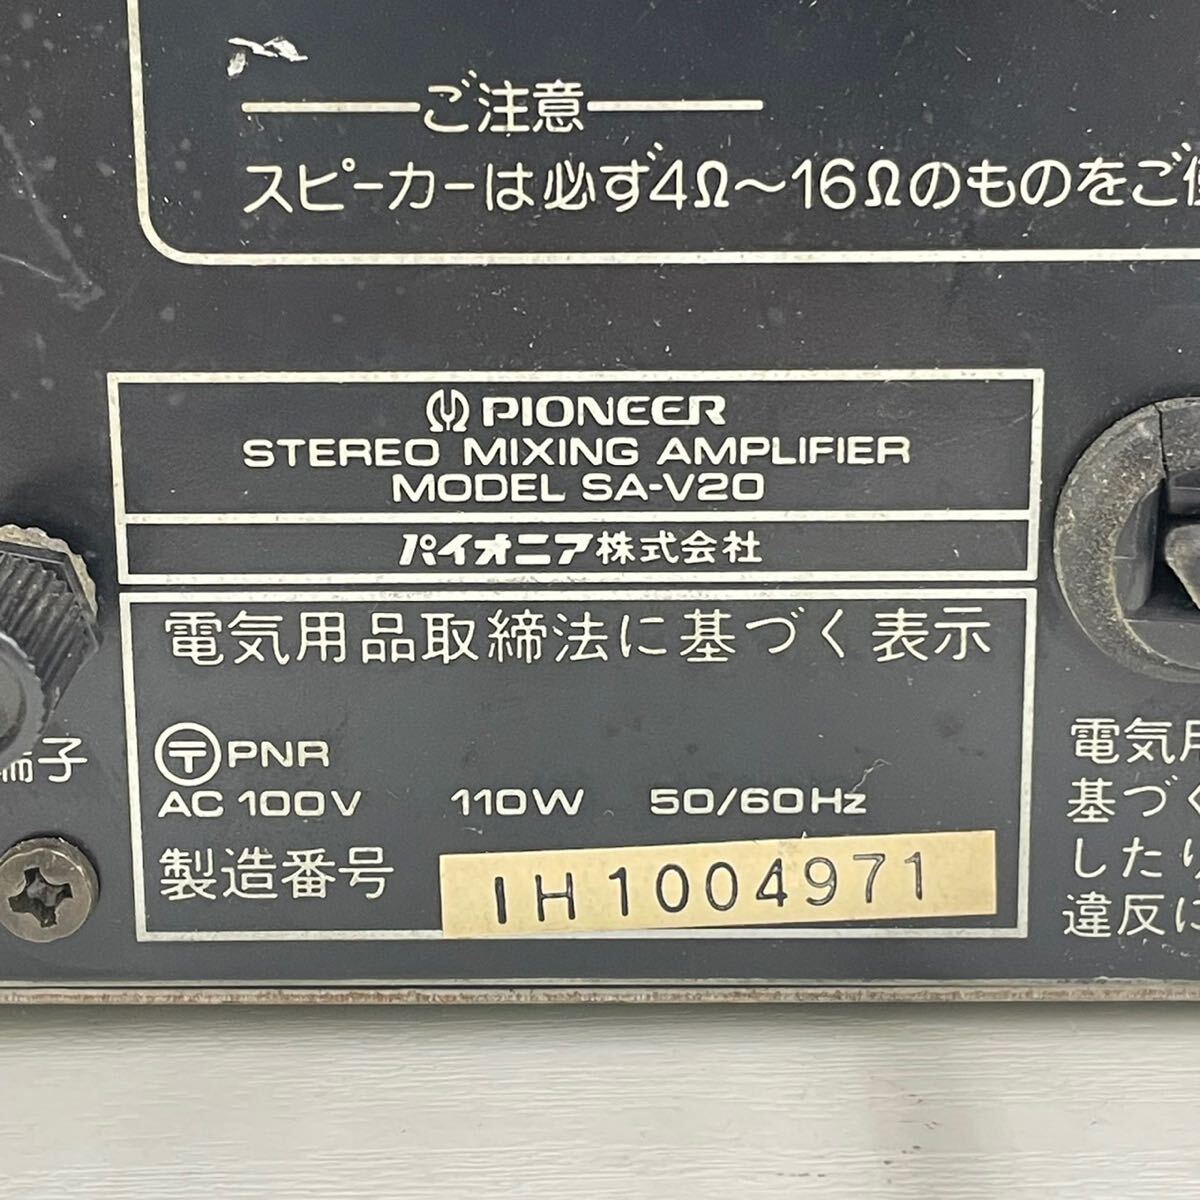 176*[ электризация проверка settled ]Pioneer Pioneer смешивание усилитель SA-V20 MIXING AMPLIFIER караоке усилитель для бизнеса звуковая аппаратура *